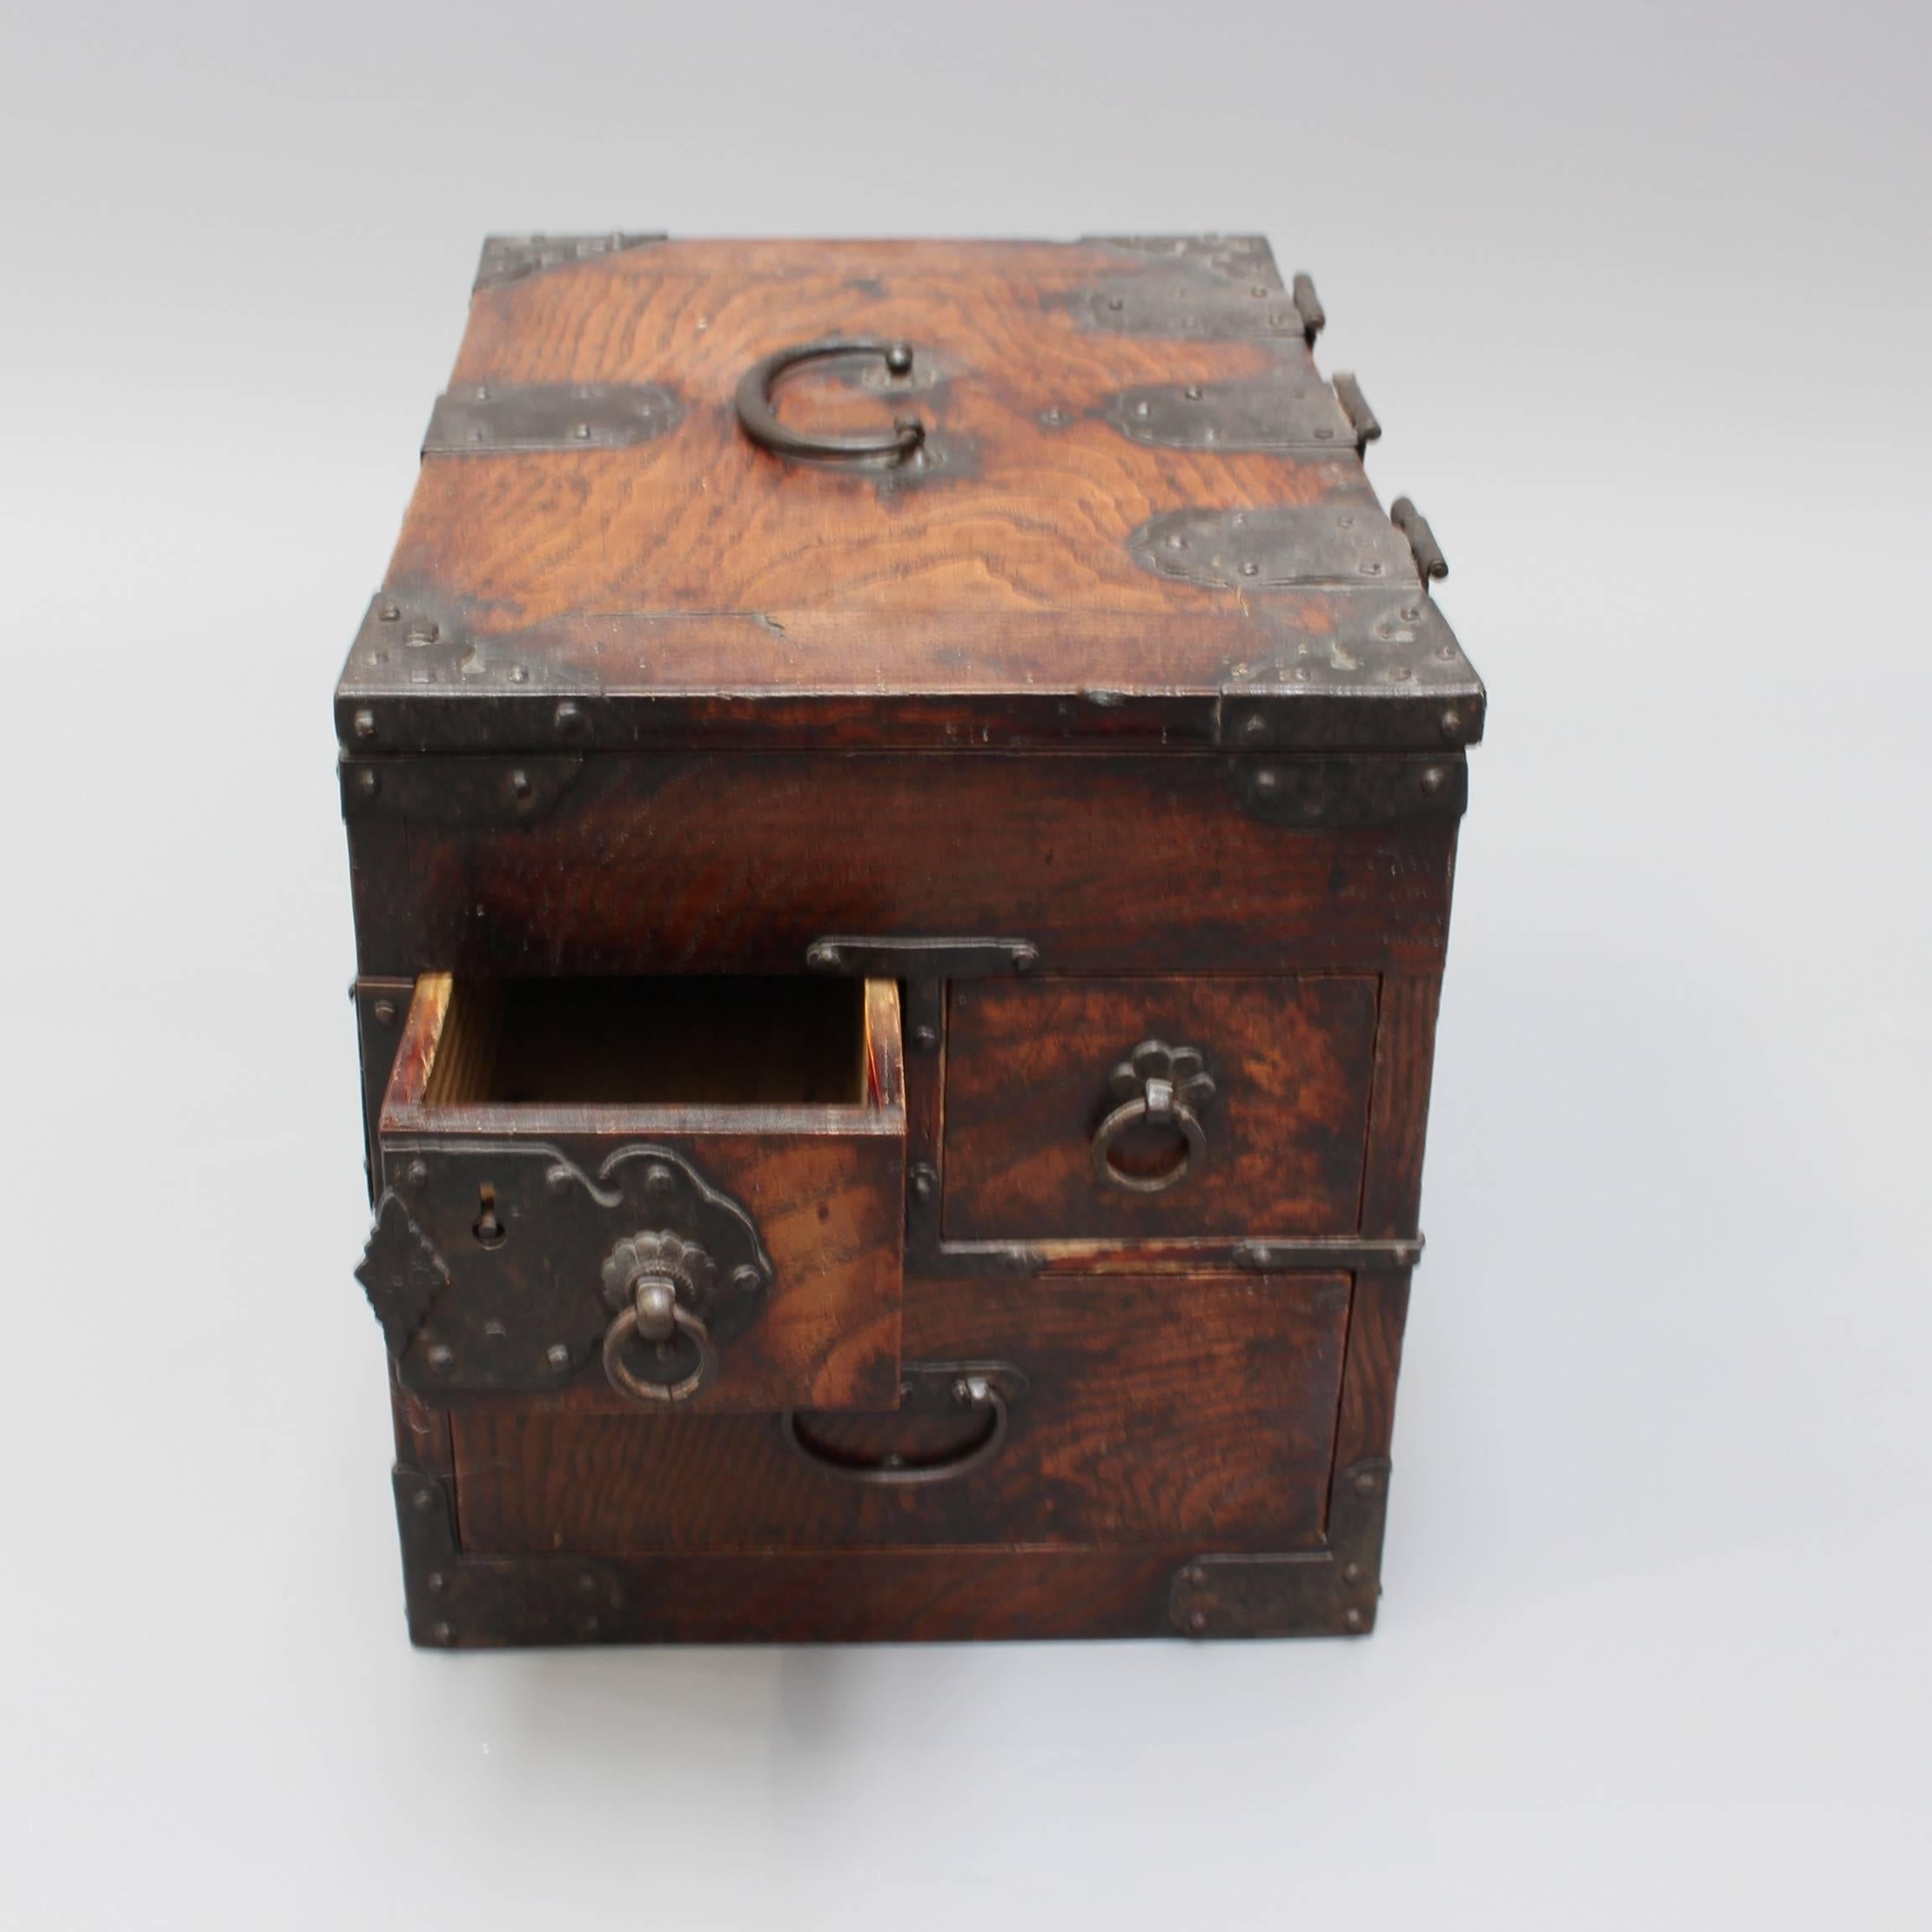 Antique Japanese Wooden Writing Box with Decorative Hardware 'Meiji Era' 1